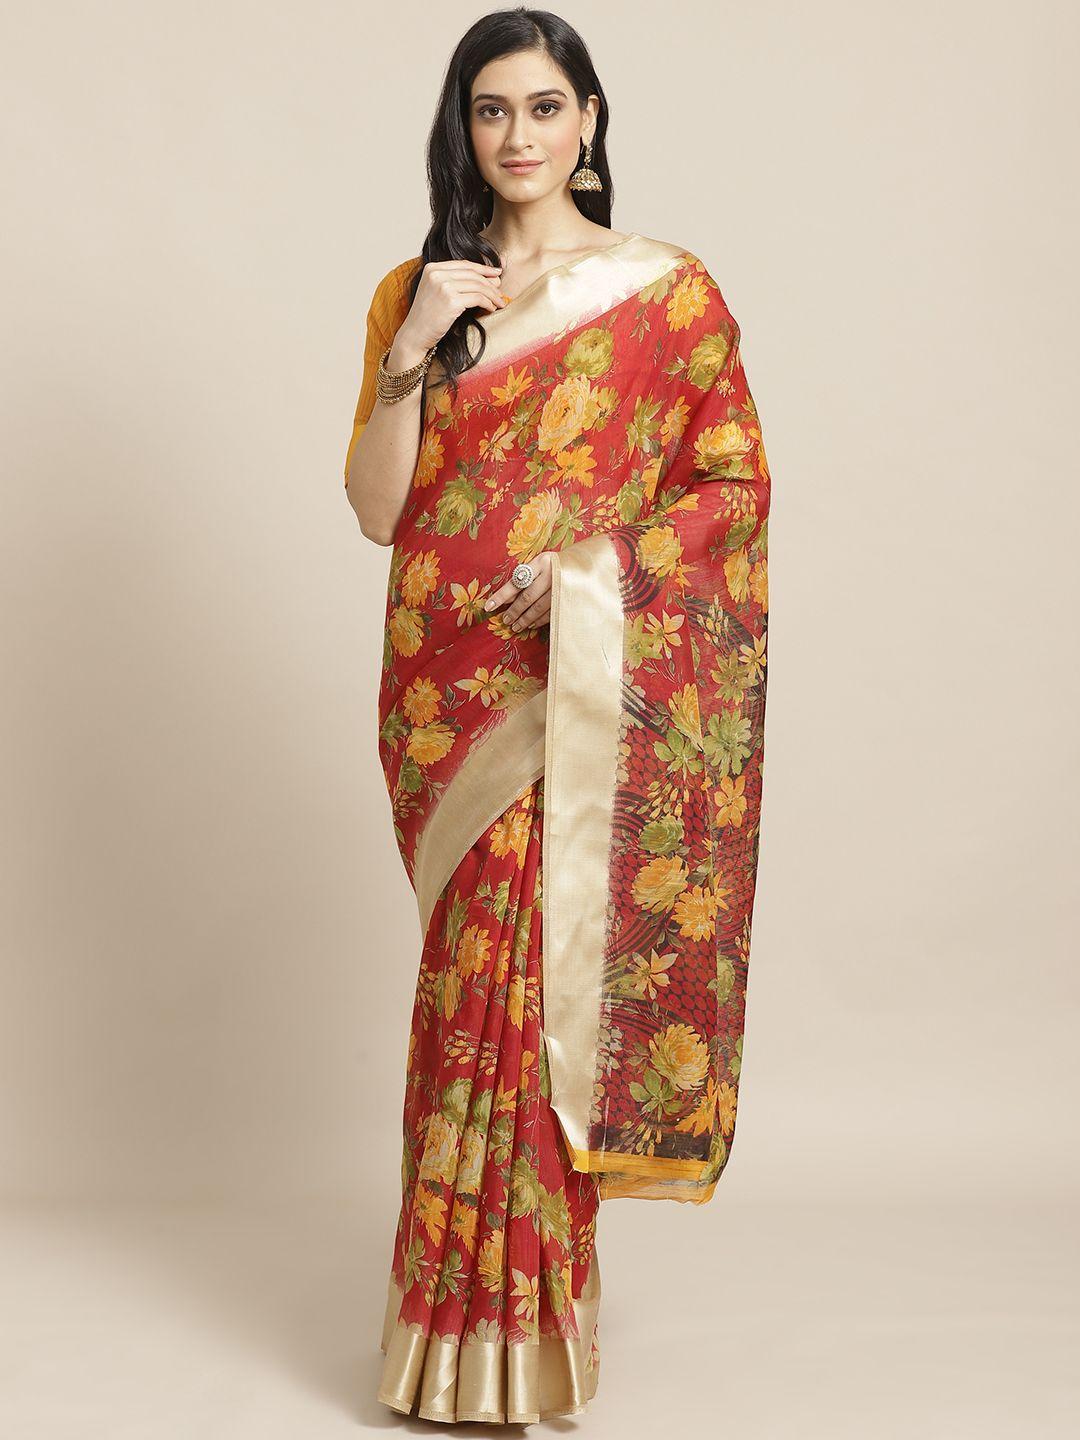 saree mall red & mustard yellow floral print saree